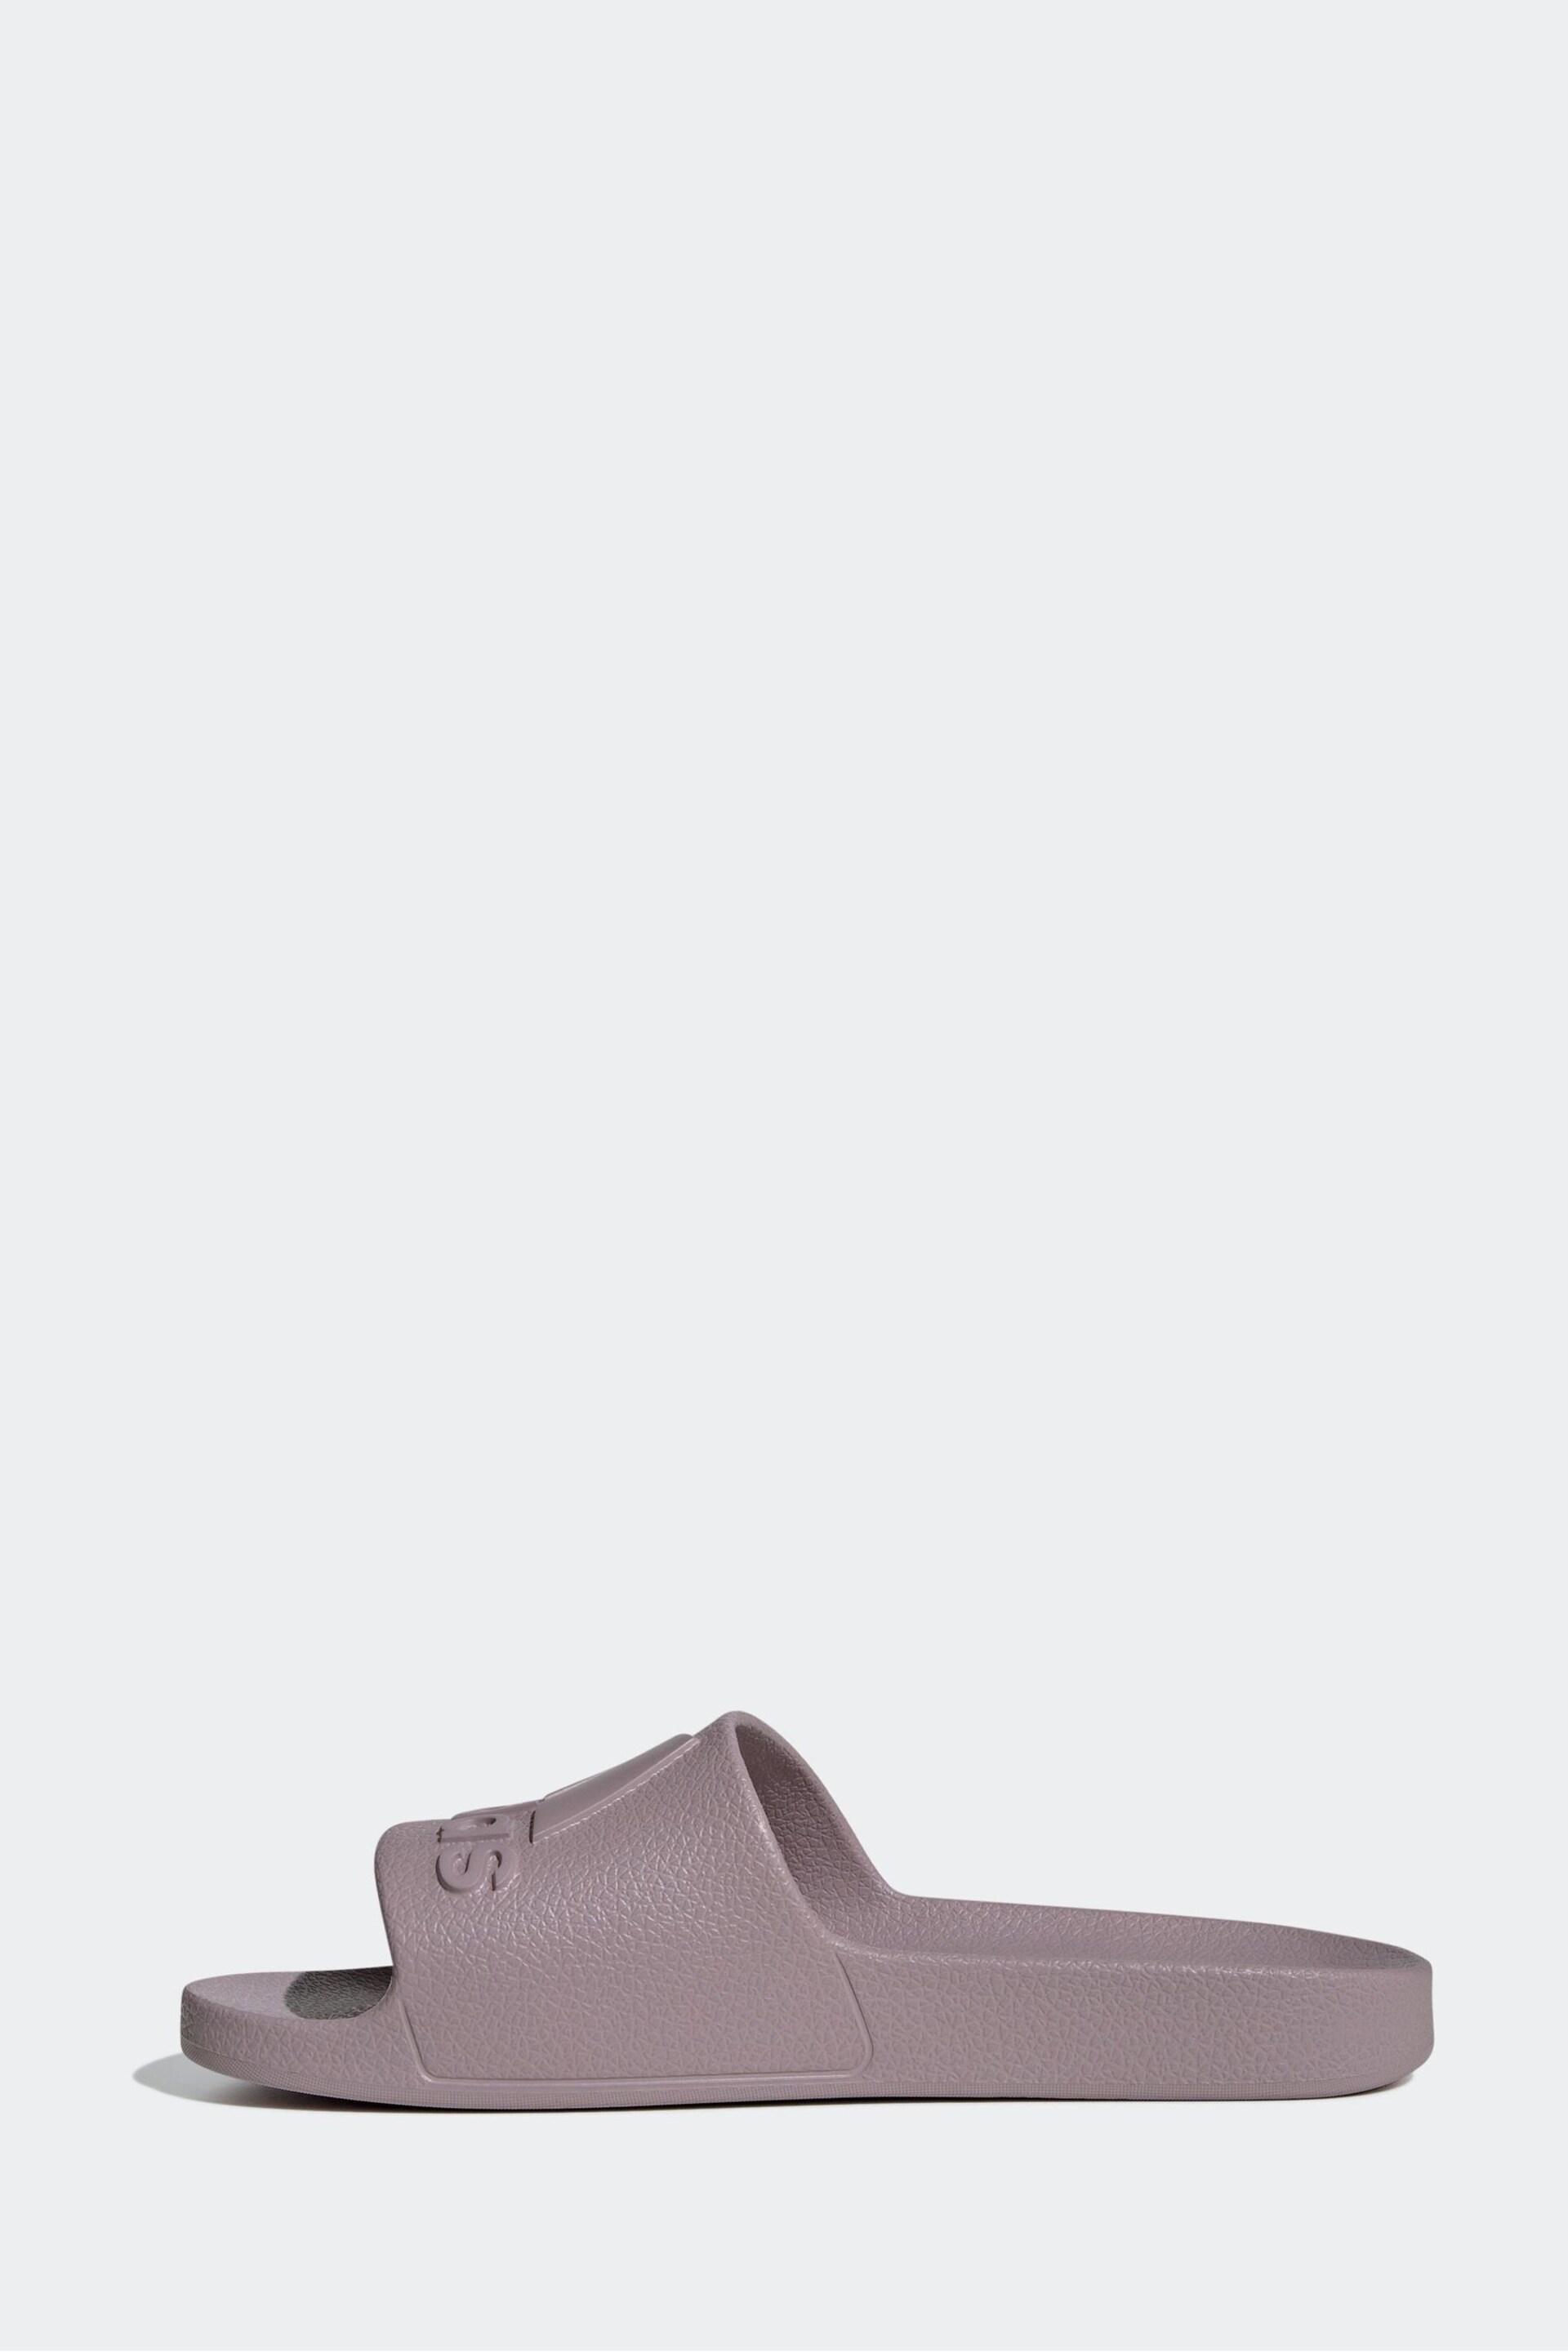 adidas Purple Sportswear Adilette Aqua Slides - Image 2 of 9